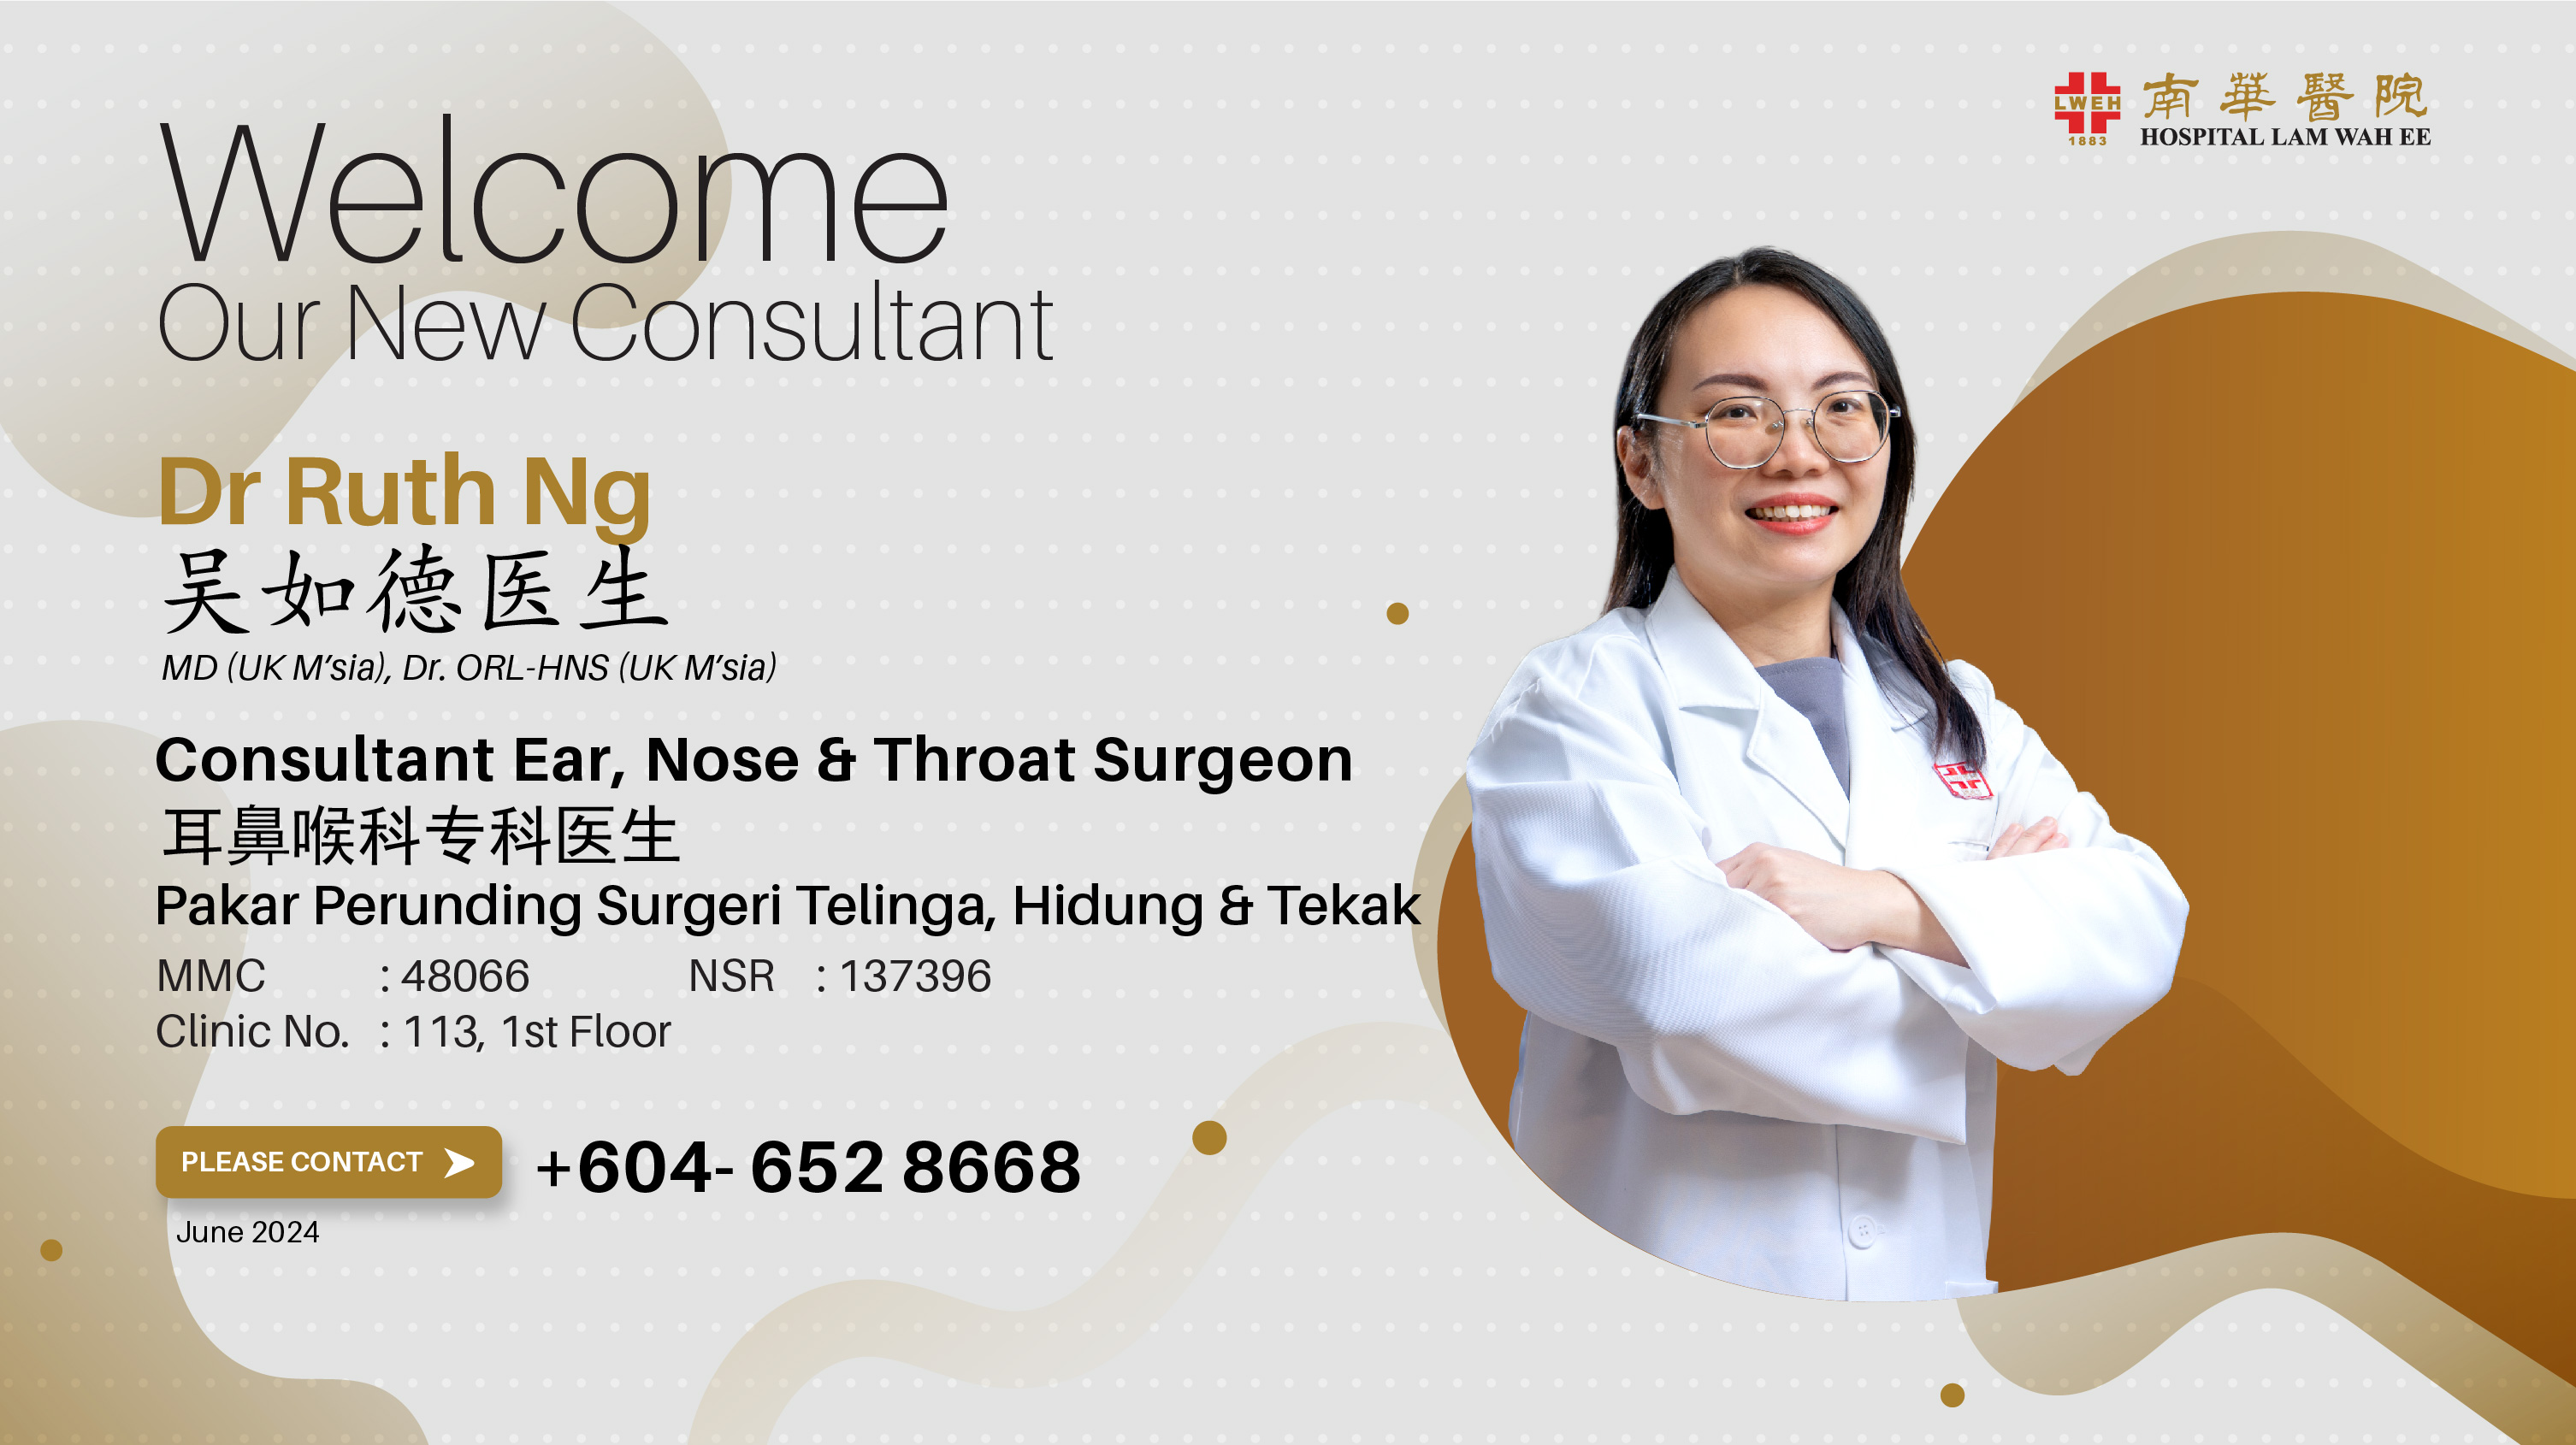 Dr Ruth Ng